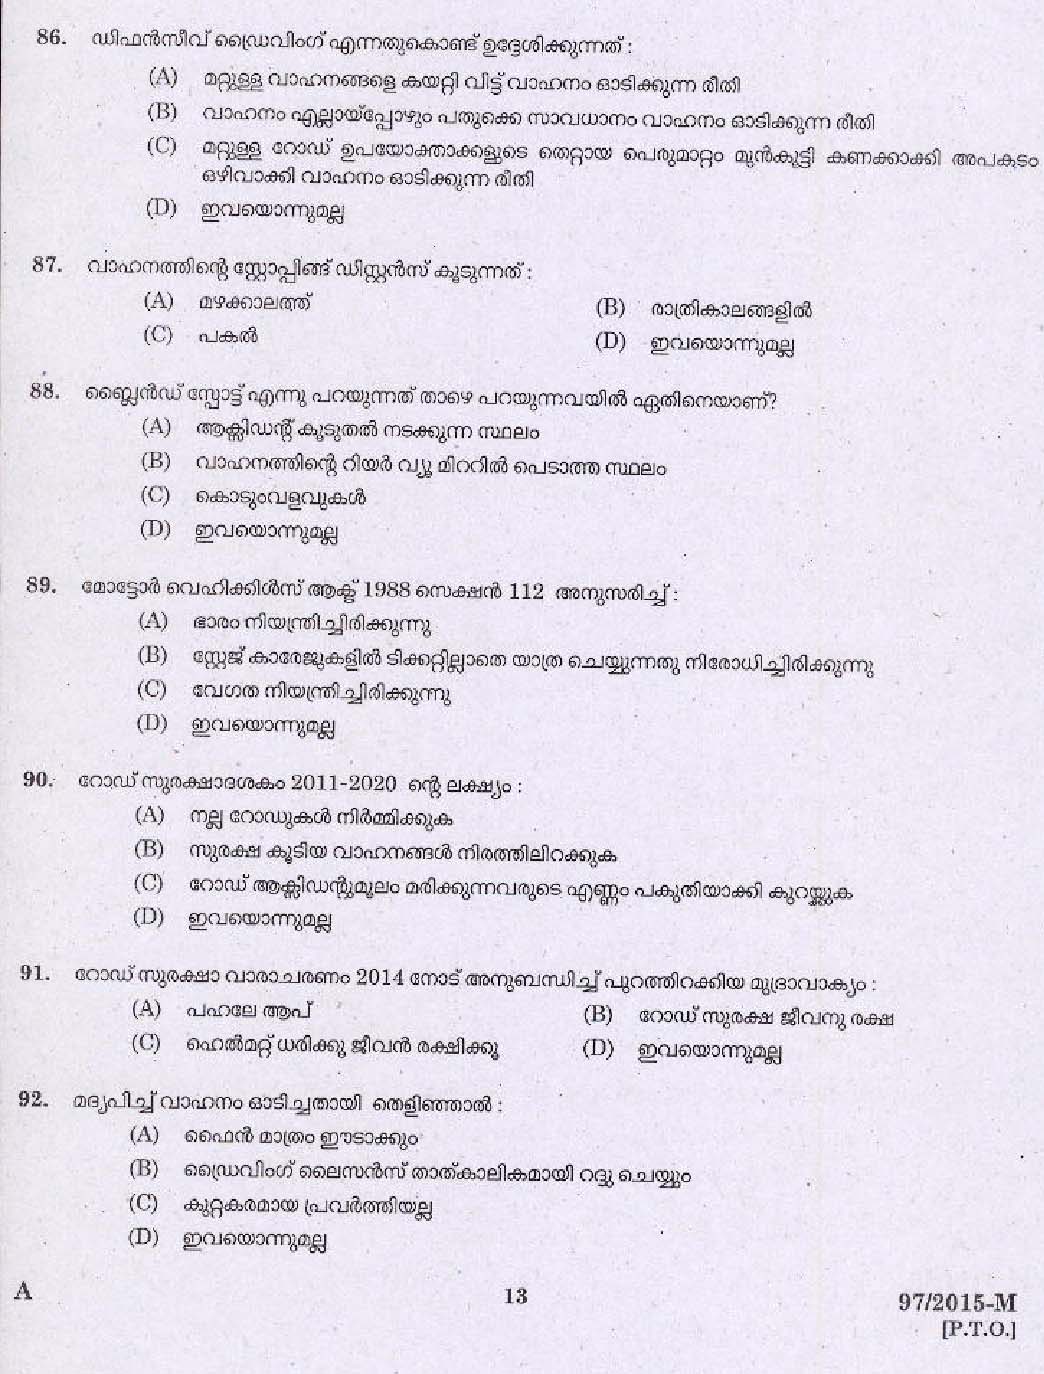 Kerala PSC Driver Grade II Exam 2015 Question Paper Code 972015 M 11